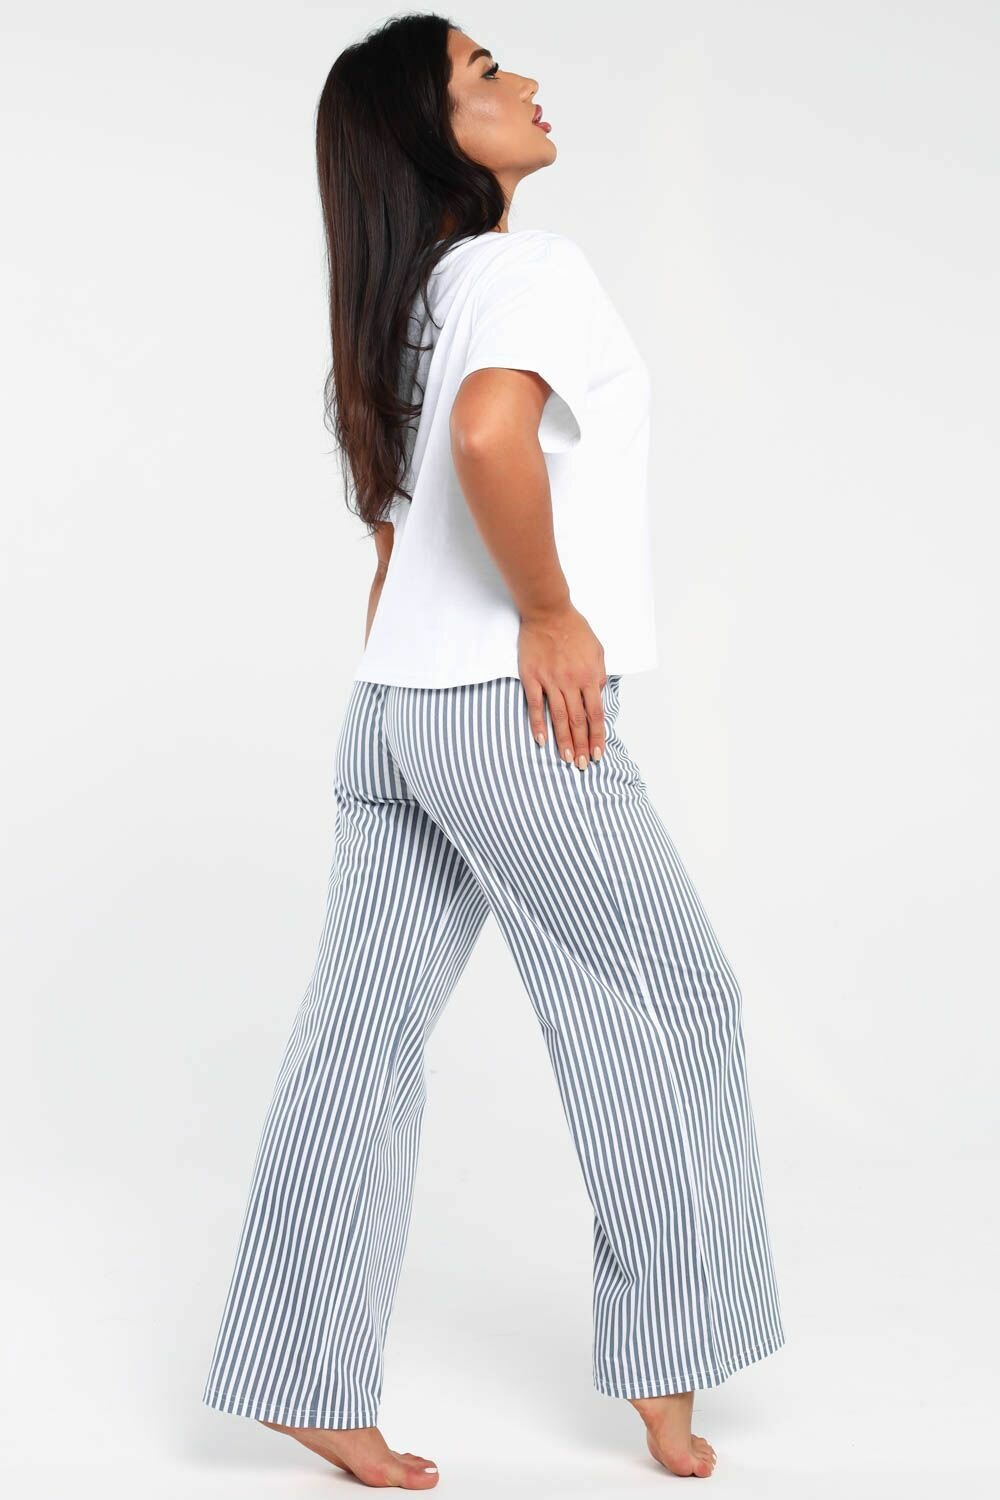 Пижама DIANIDA М-799 размеры 44-54 (54, светло-серый) - фотография № 10